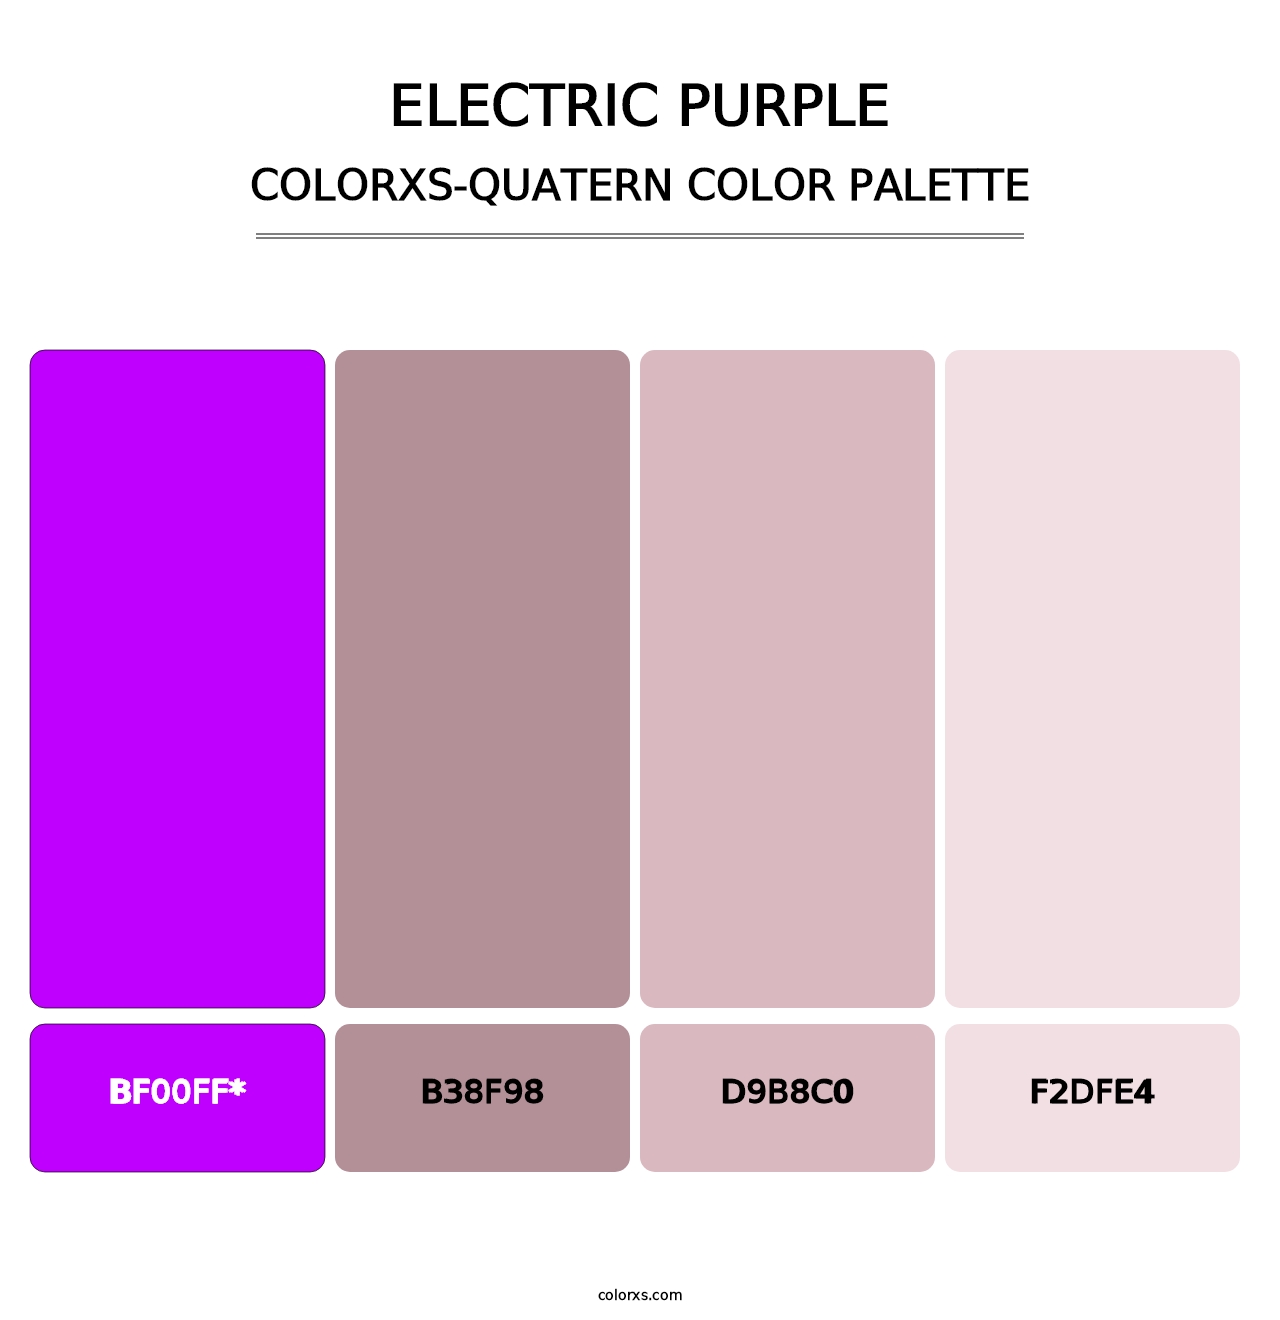 Electric Purple - Colorxs Quatern Palette